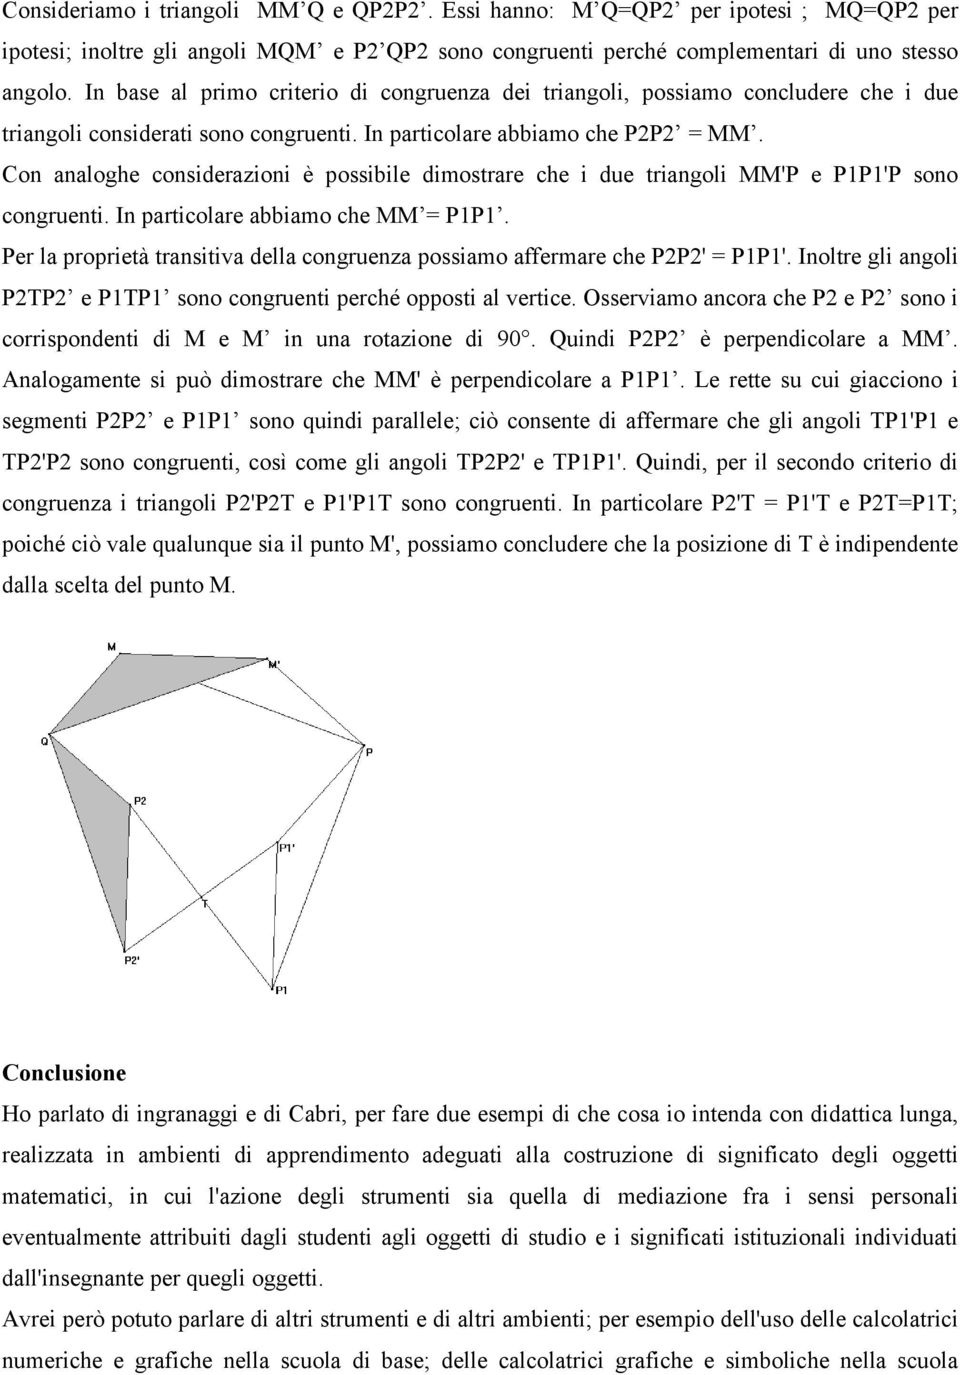 Con analoghe considerazioni è possibile dimostrare che i due triangoli MM'P e P1P1'P sono congruenti. In particolare abbiamo che MM = P1P1.